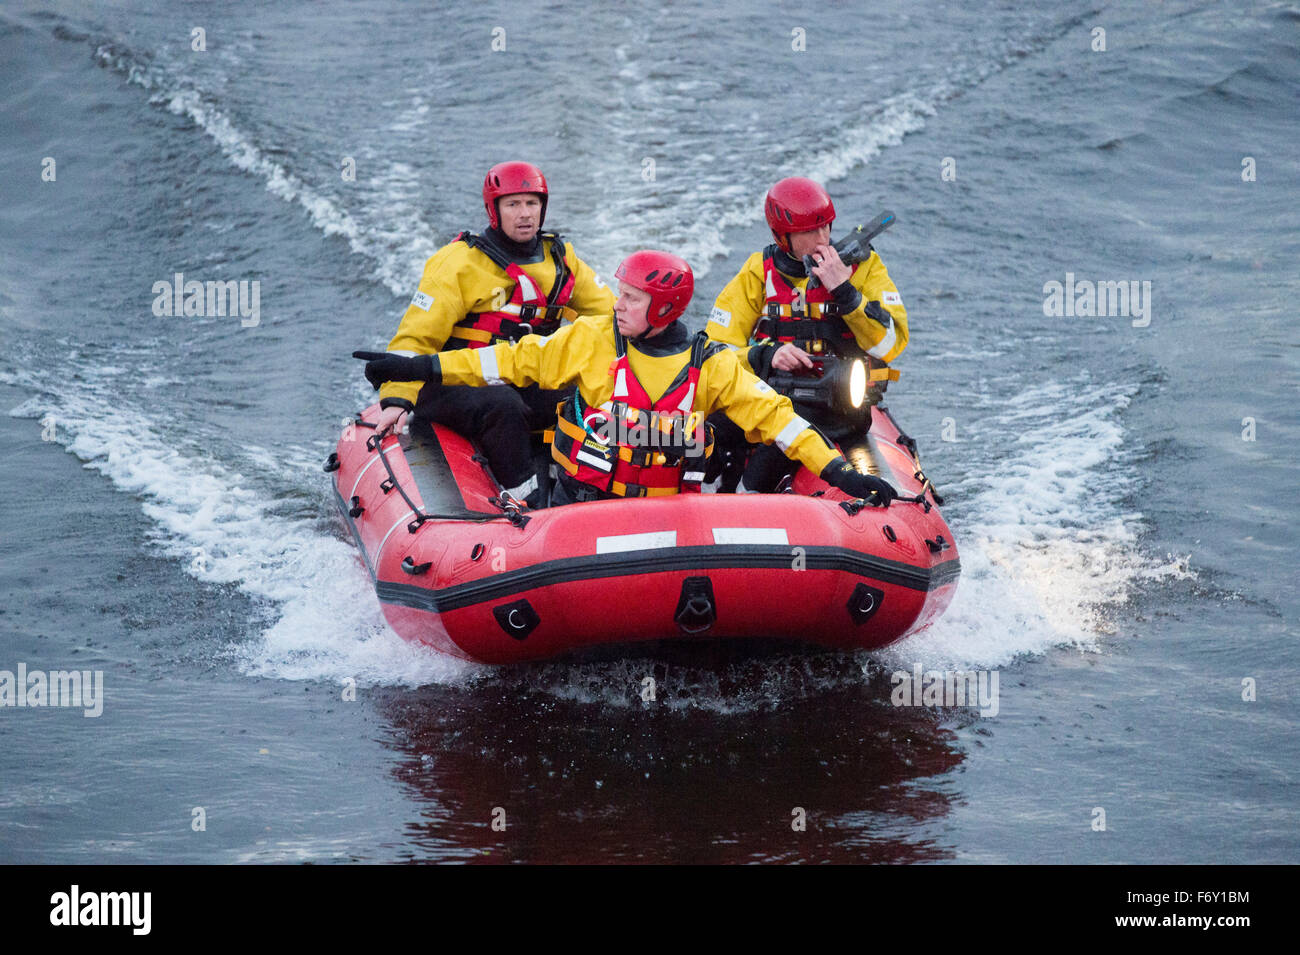 Pays de Galles du Sud une équipe de secours d'incendie et d'utiliser un bateau de vitesse pour rechercher une personne vu de la rivière Taff à Cardiff, Pays de Galles du Sud. Banque D'Images